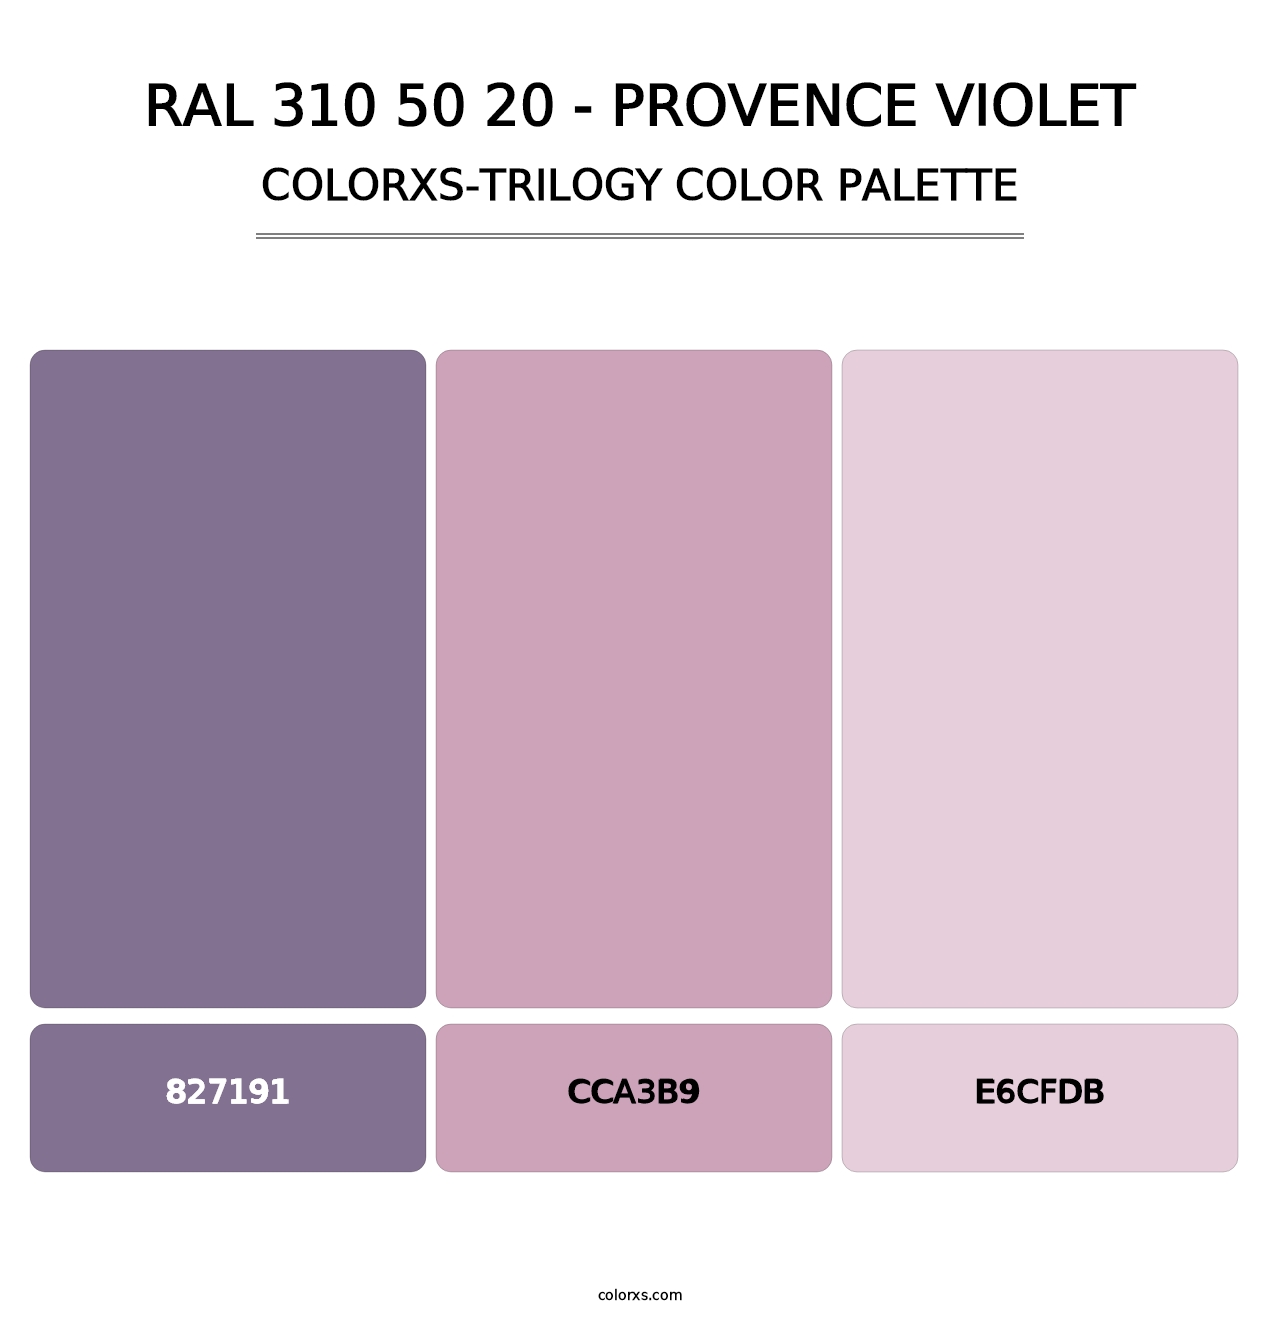 RAL 310 50 20 - Provence Violet - Colorxs Trilogy Palette